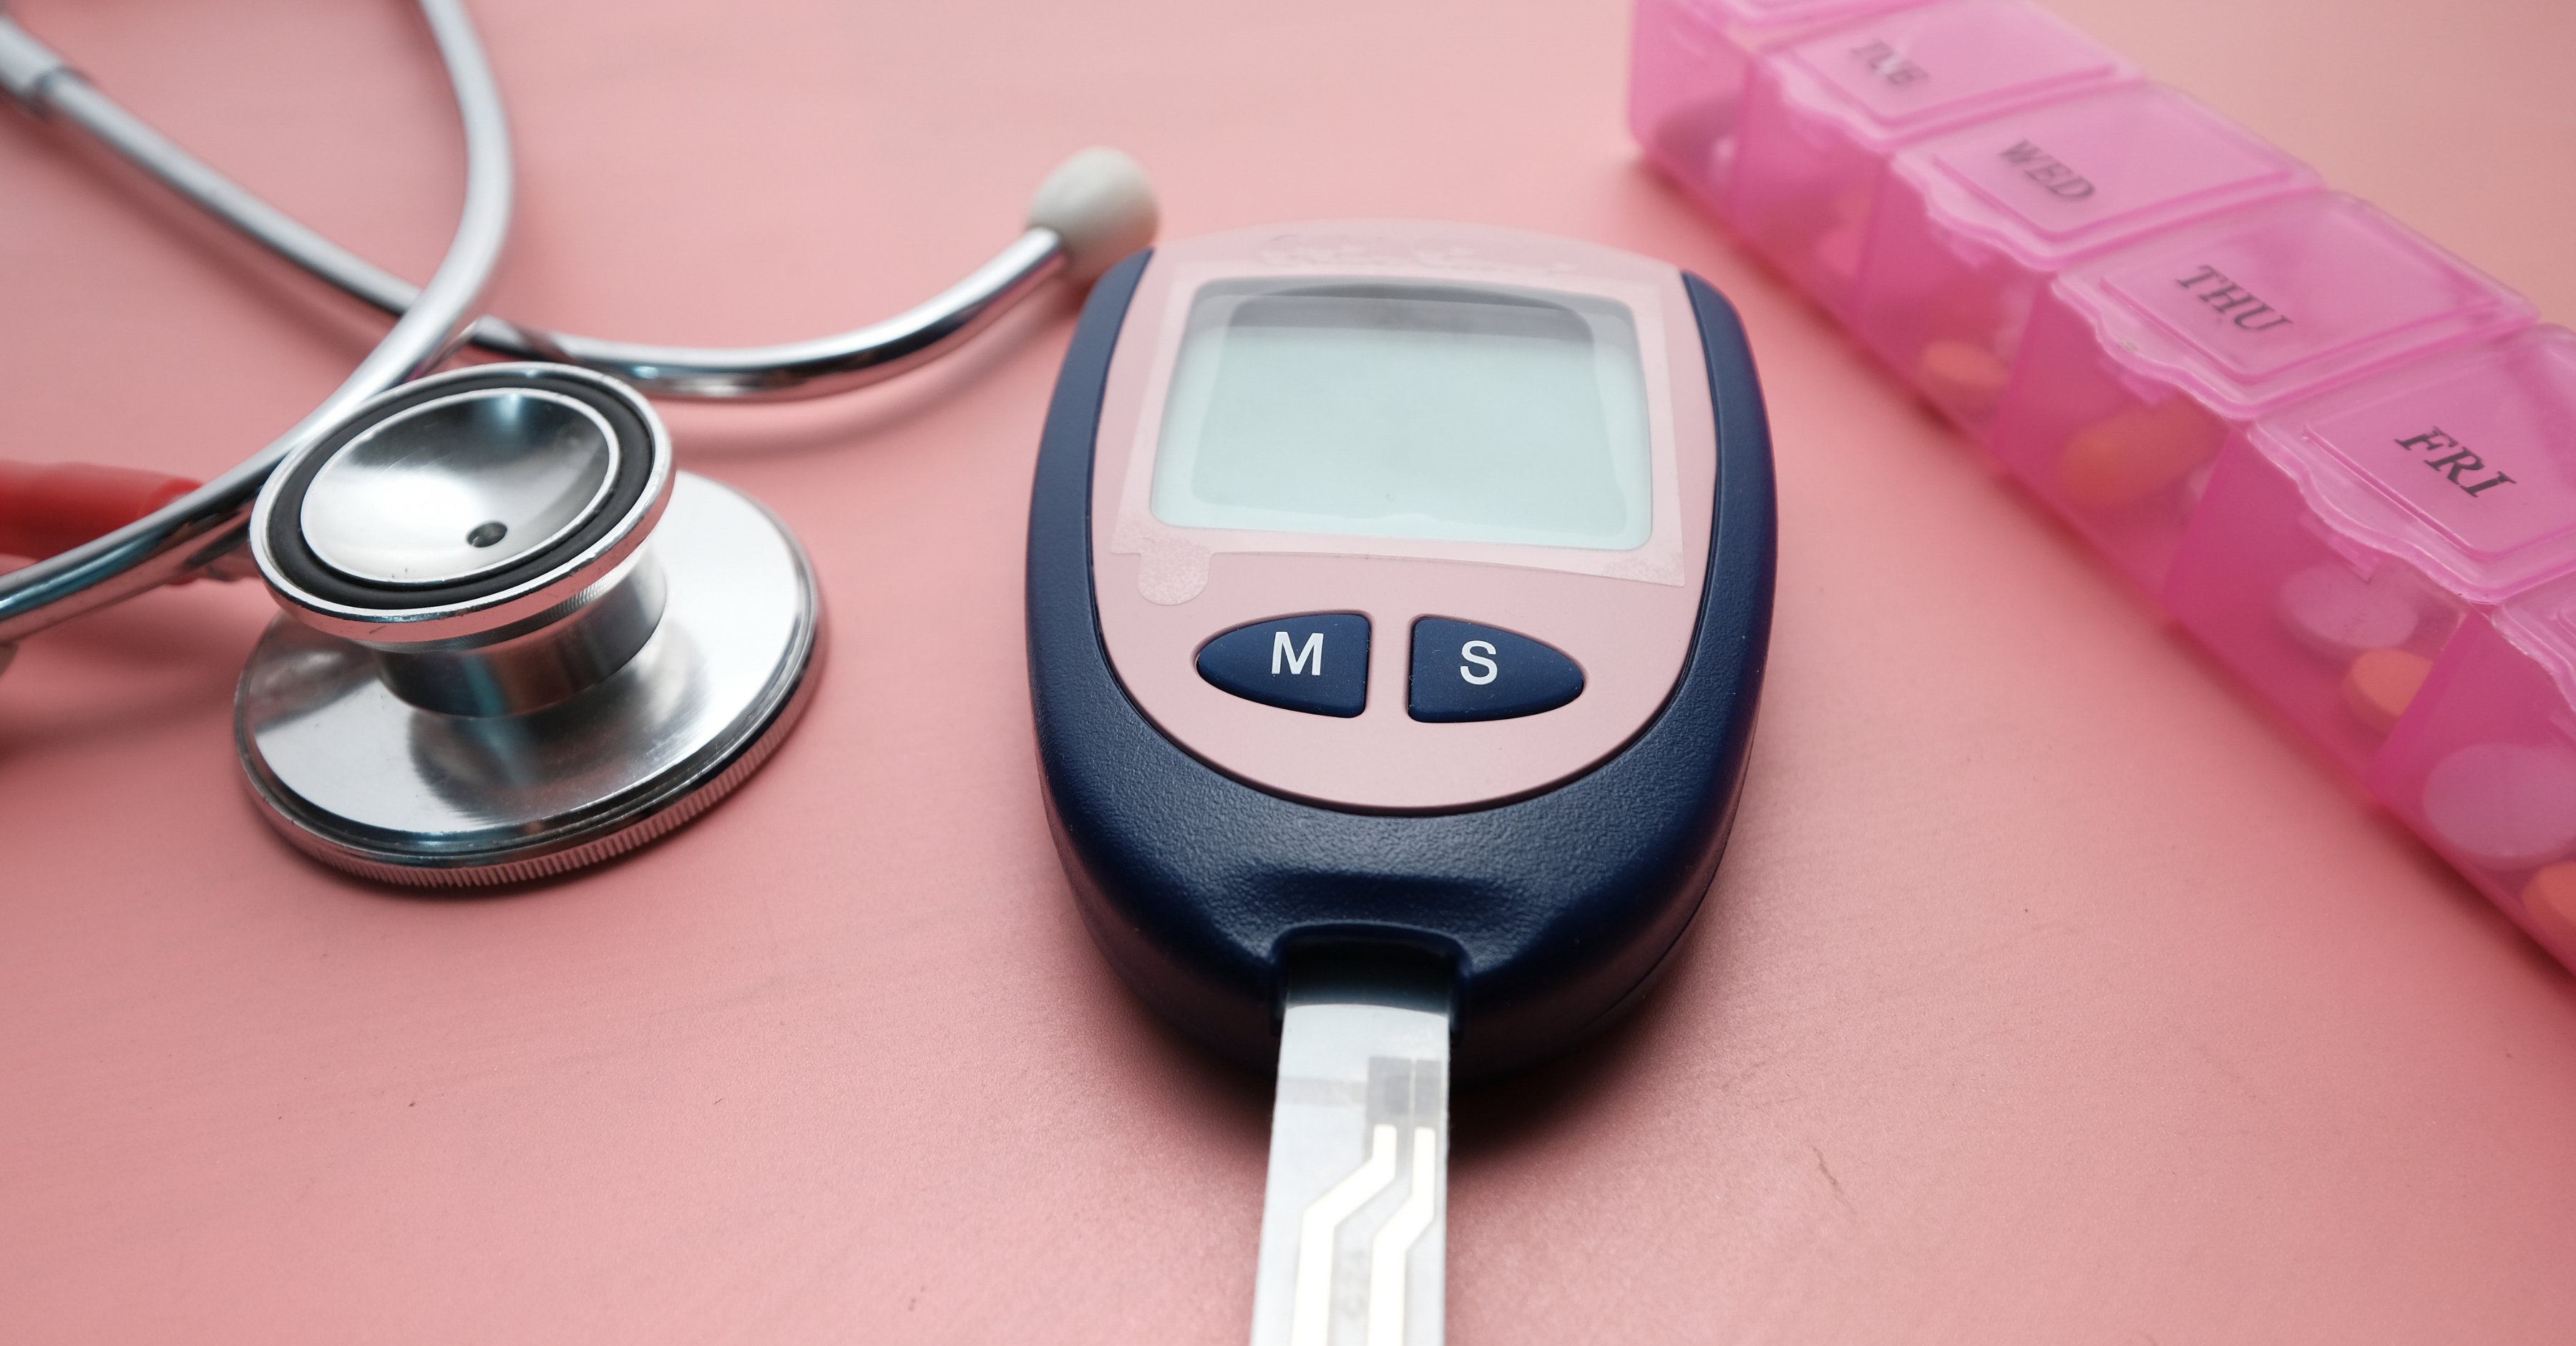 Quem tem diabetes precisa monitorar diariamente a glicemia? - por: Dra. Fernanda Braga